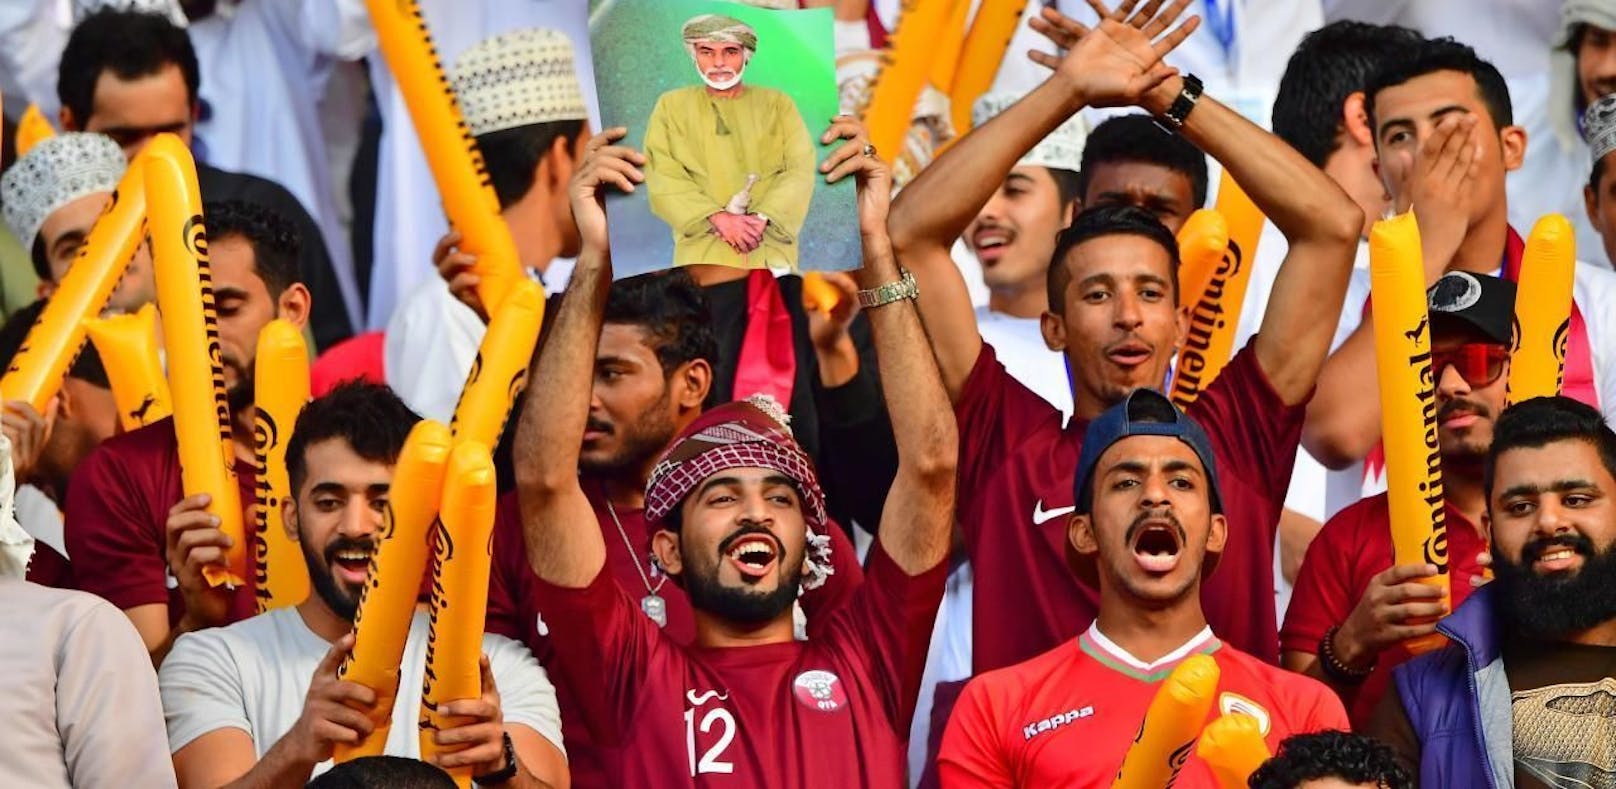 Katarische Fans während des Spiels gegen Japan beim Asien-Cup.